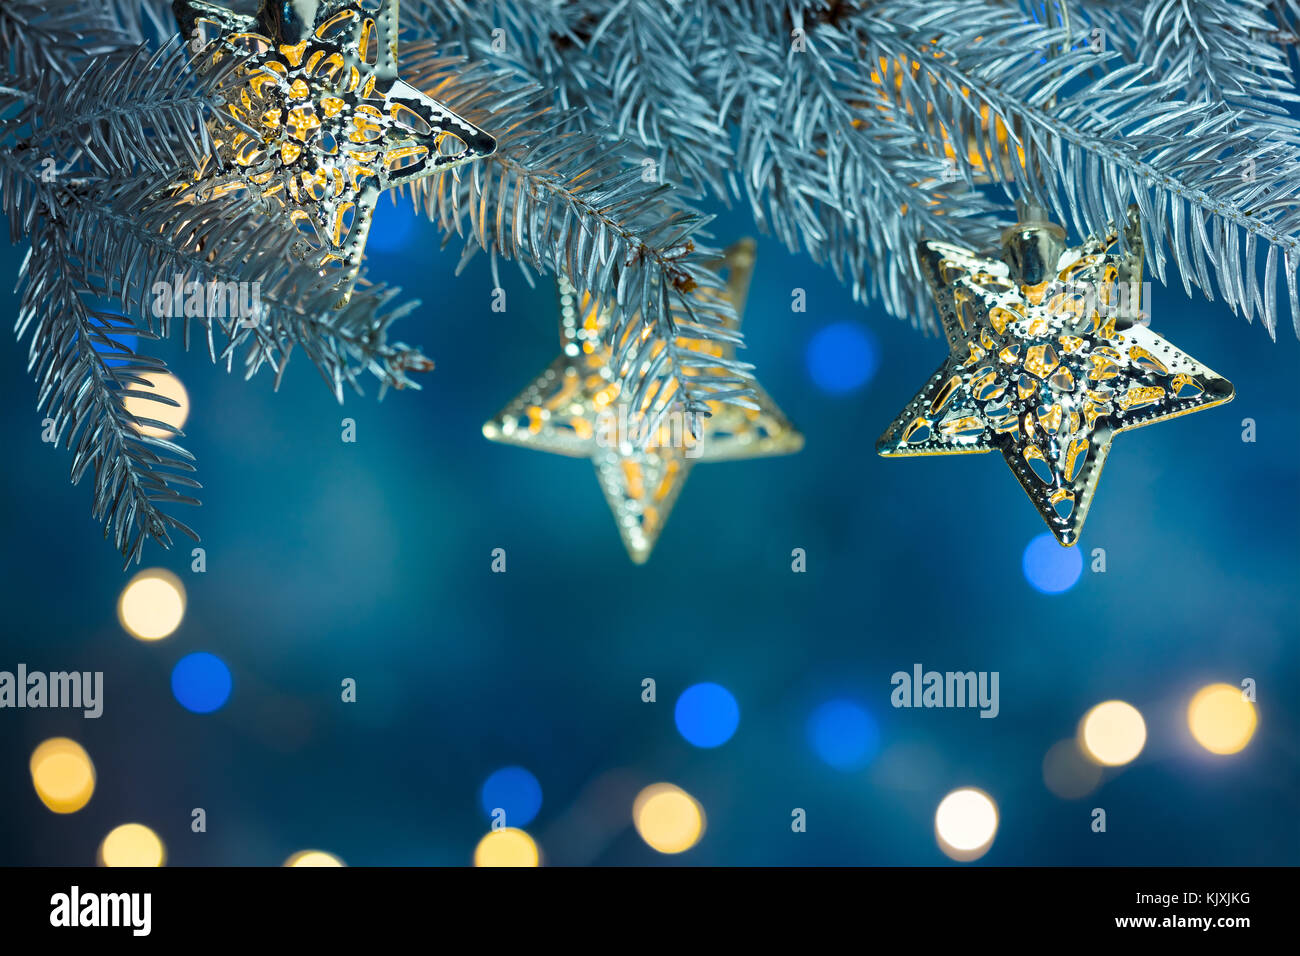 Fir Tree Branch mit Girlanden auf blauem Hintergrund mit unscharfen Weihnachtsbeleuchtung dekoriert Stockfoto